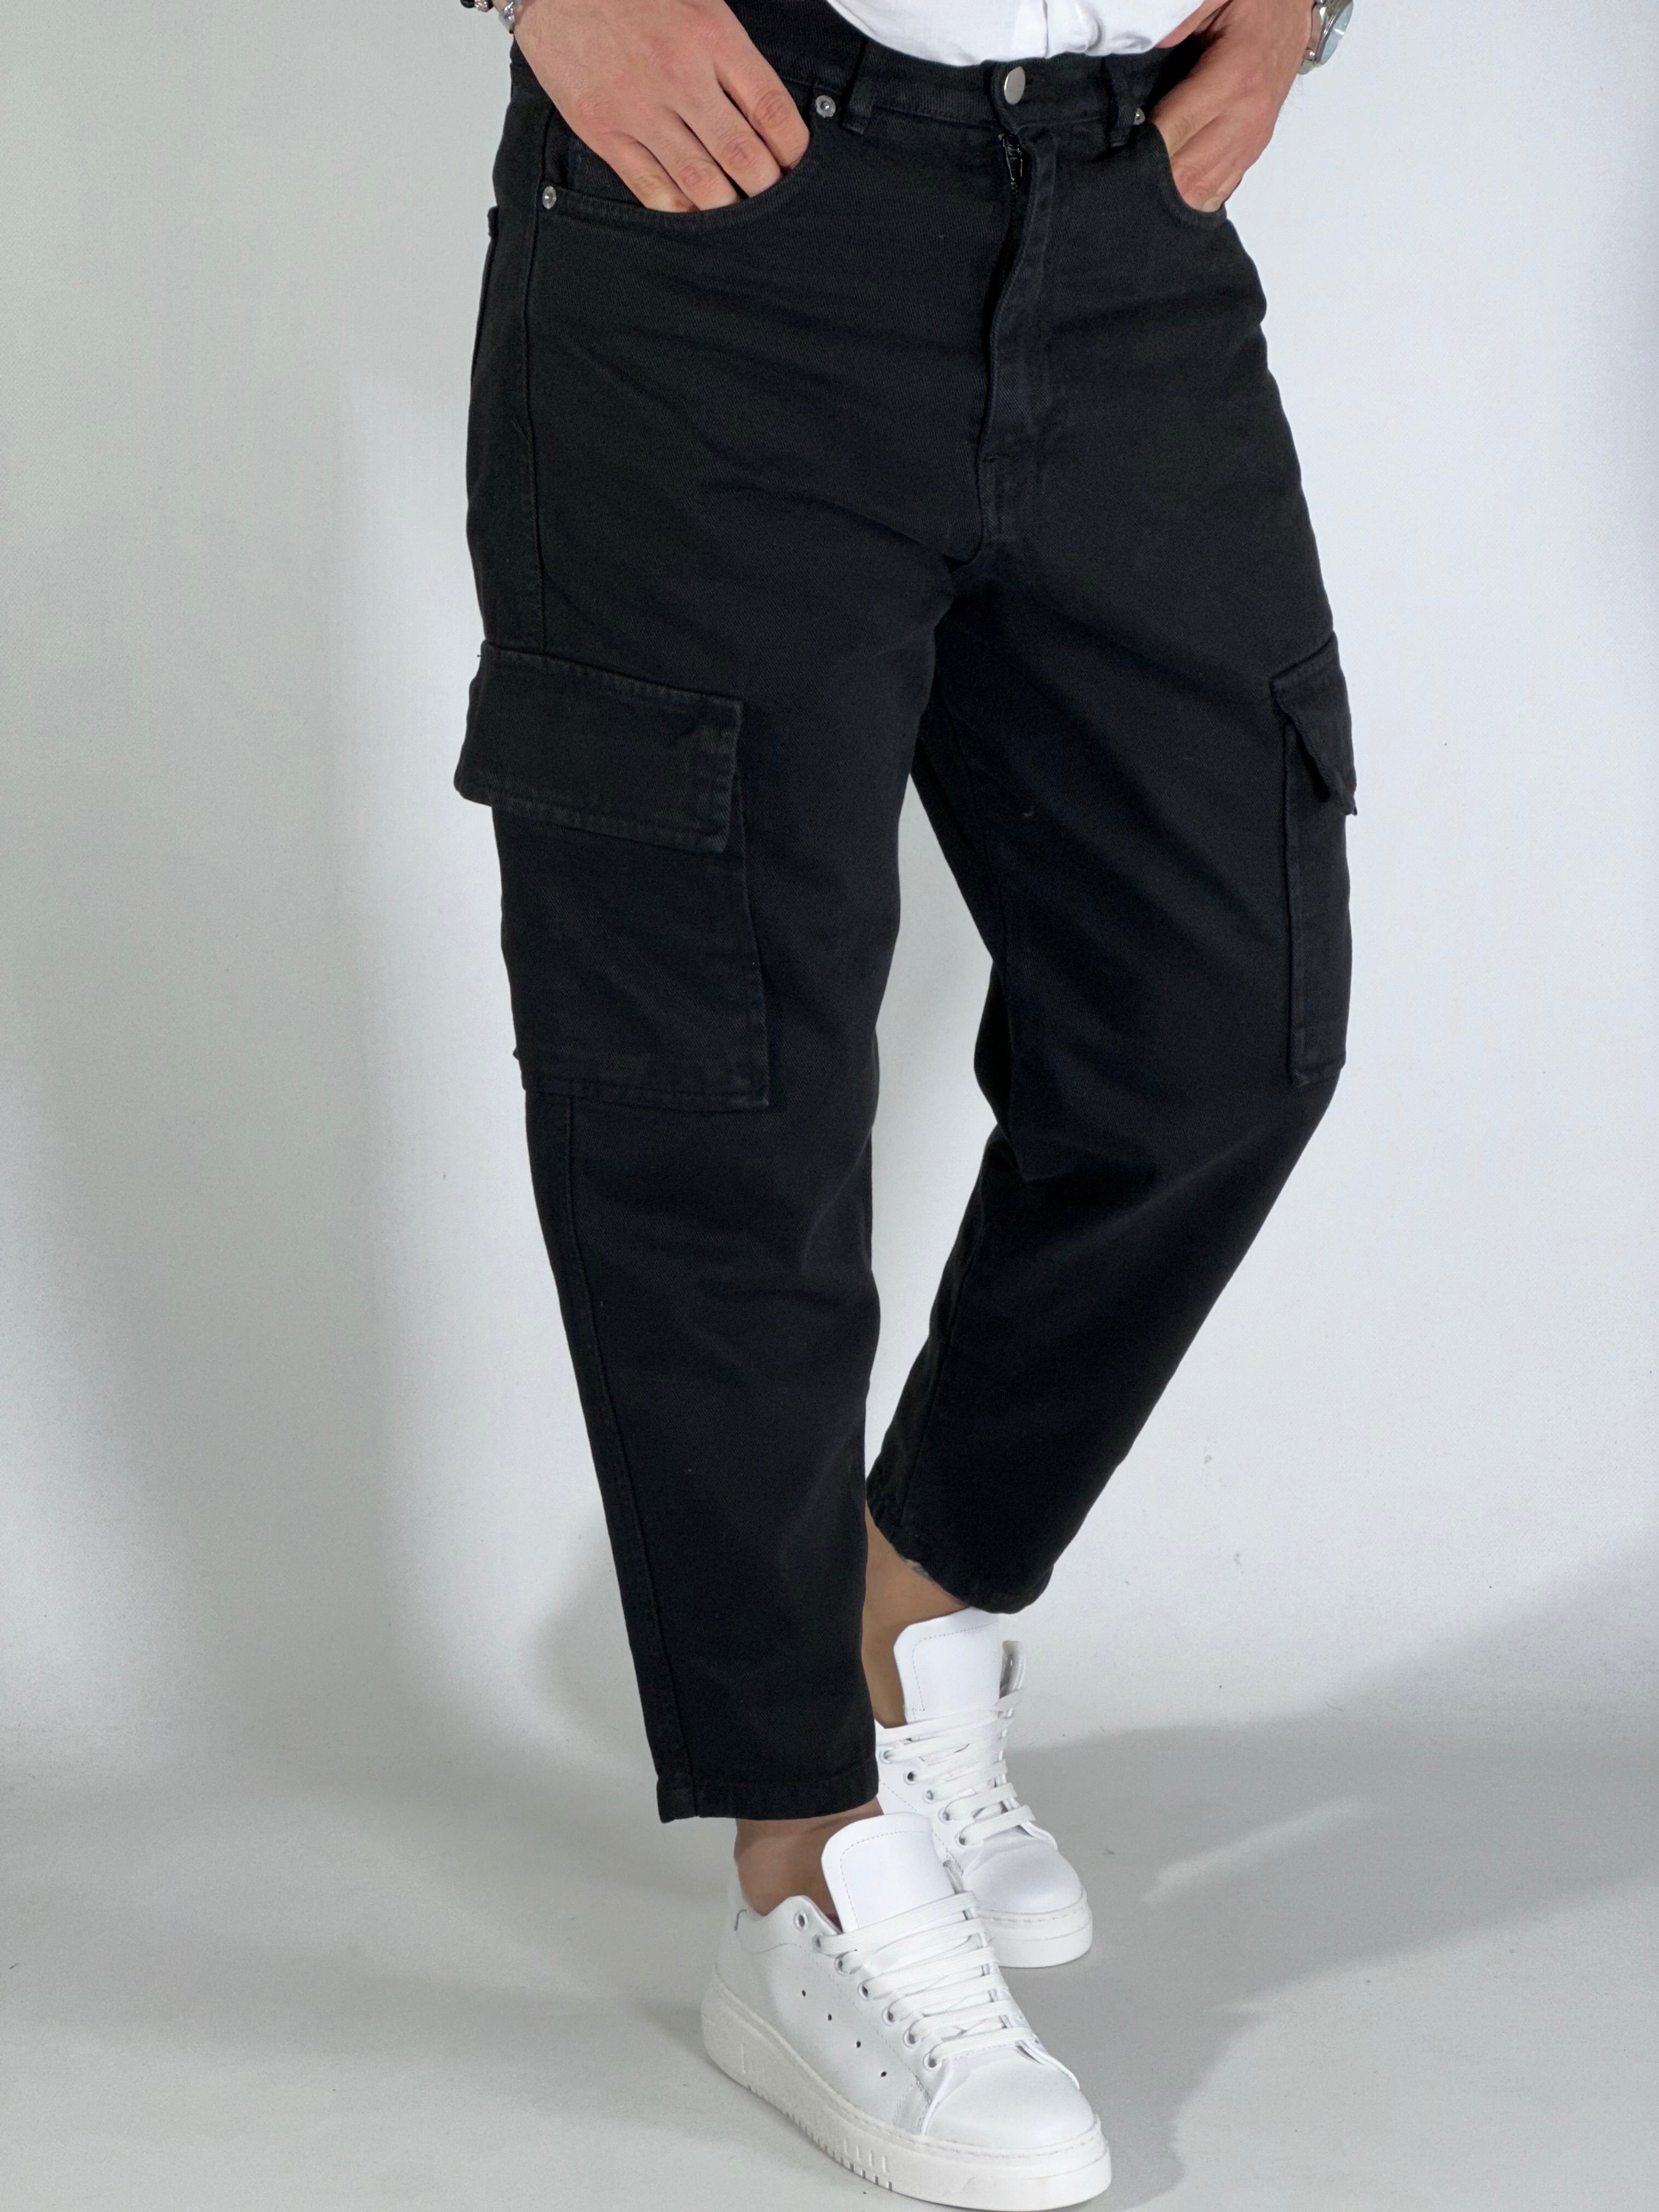 Pantalone loose fit cargo nero GA/0424